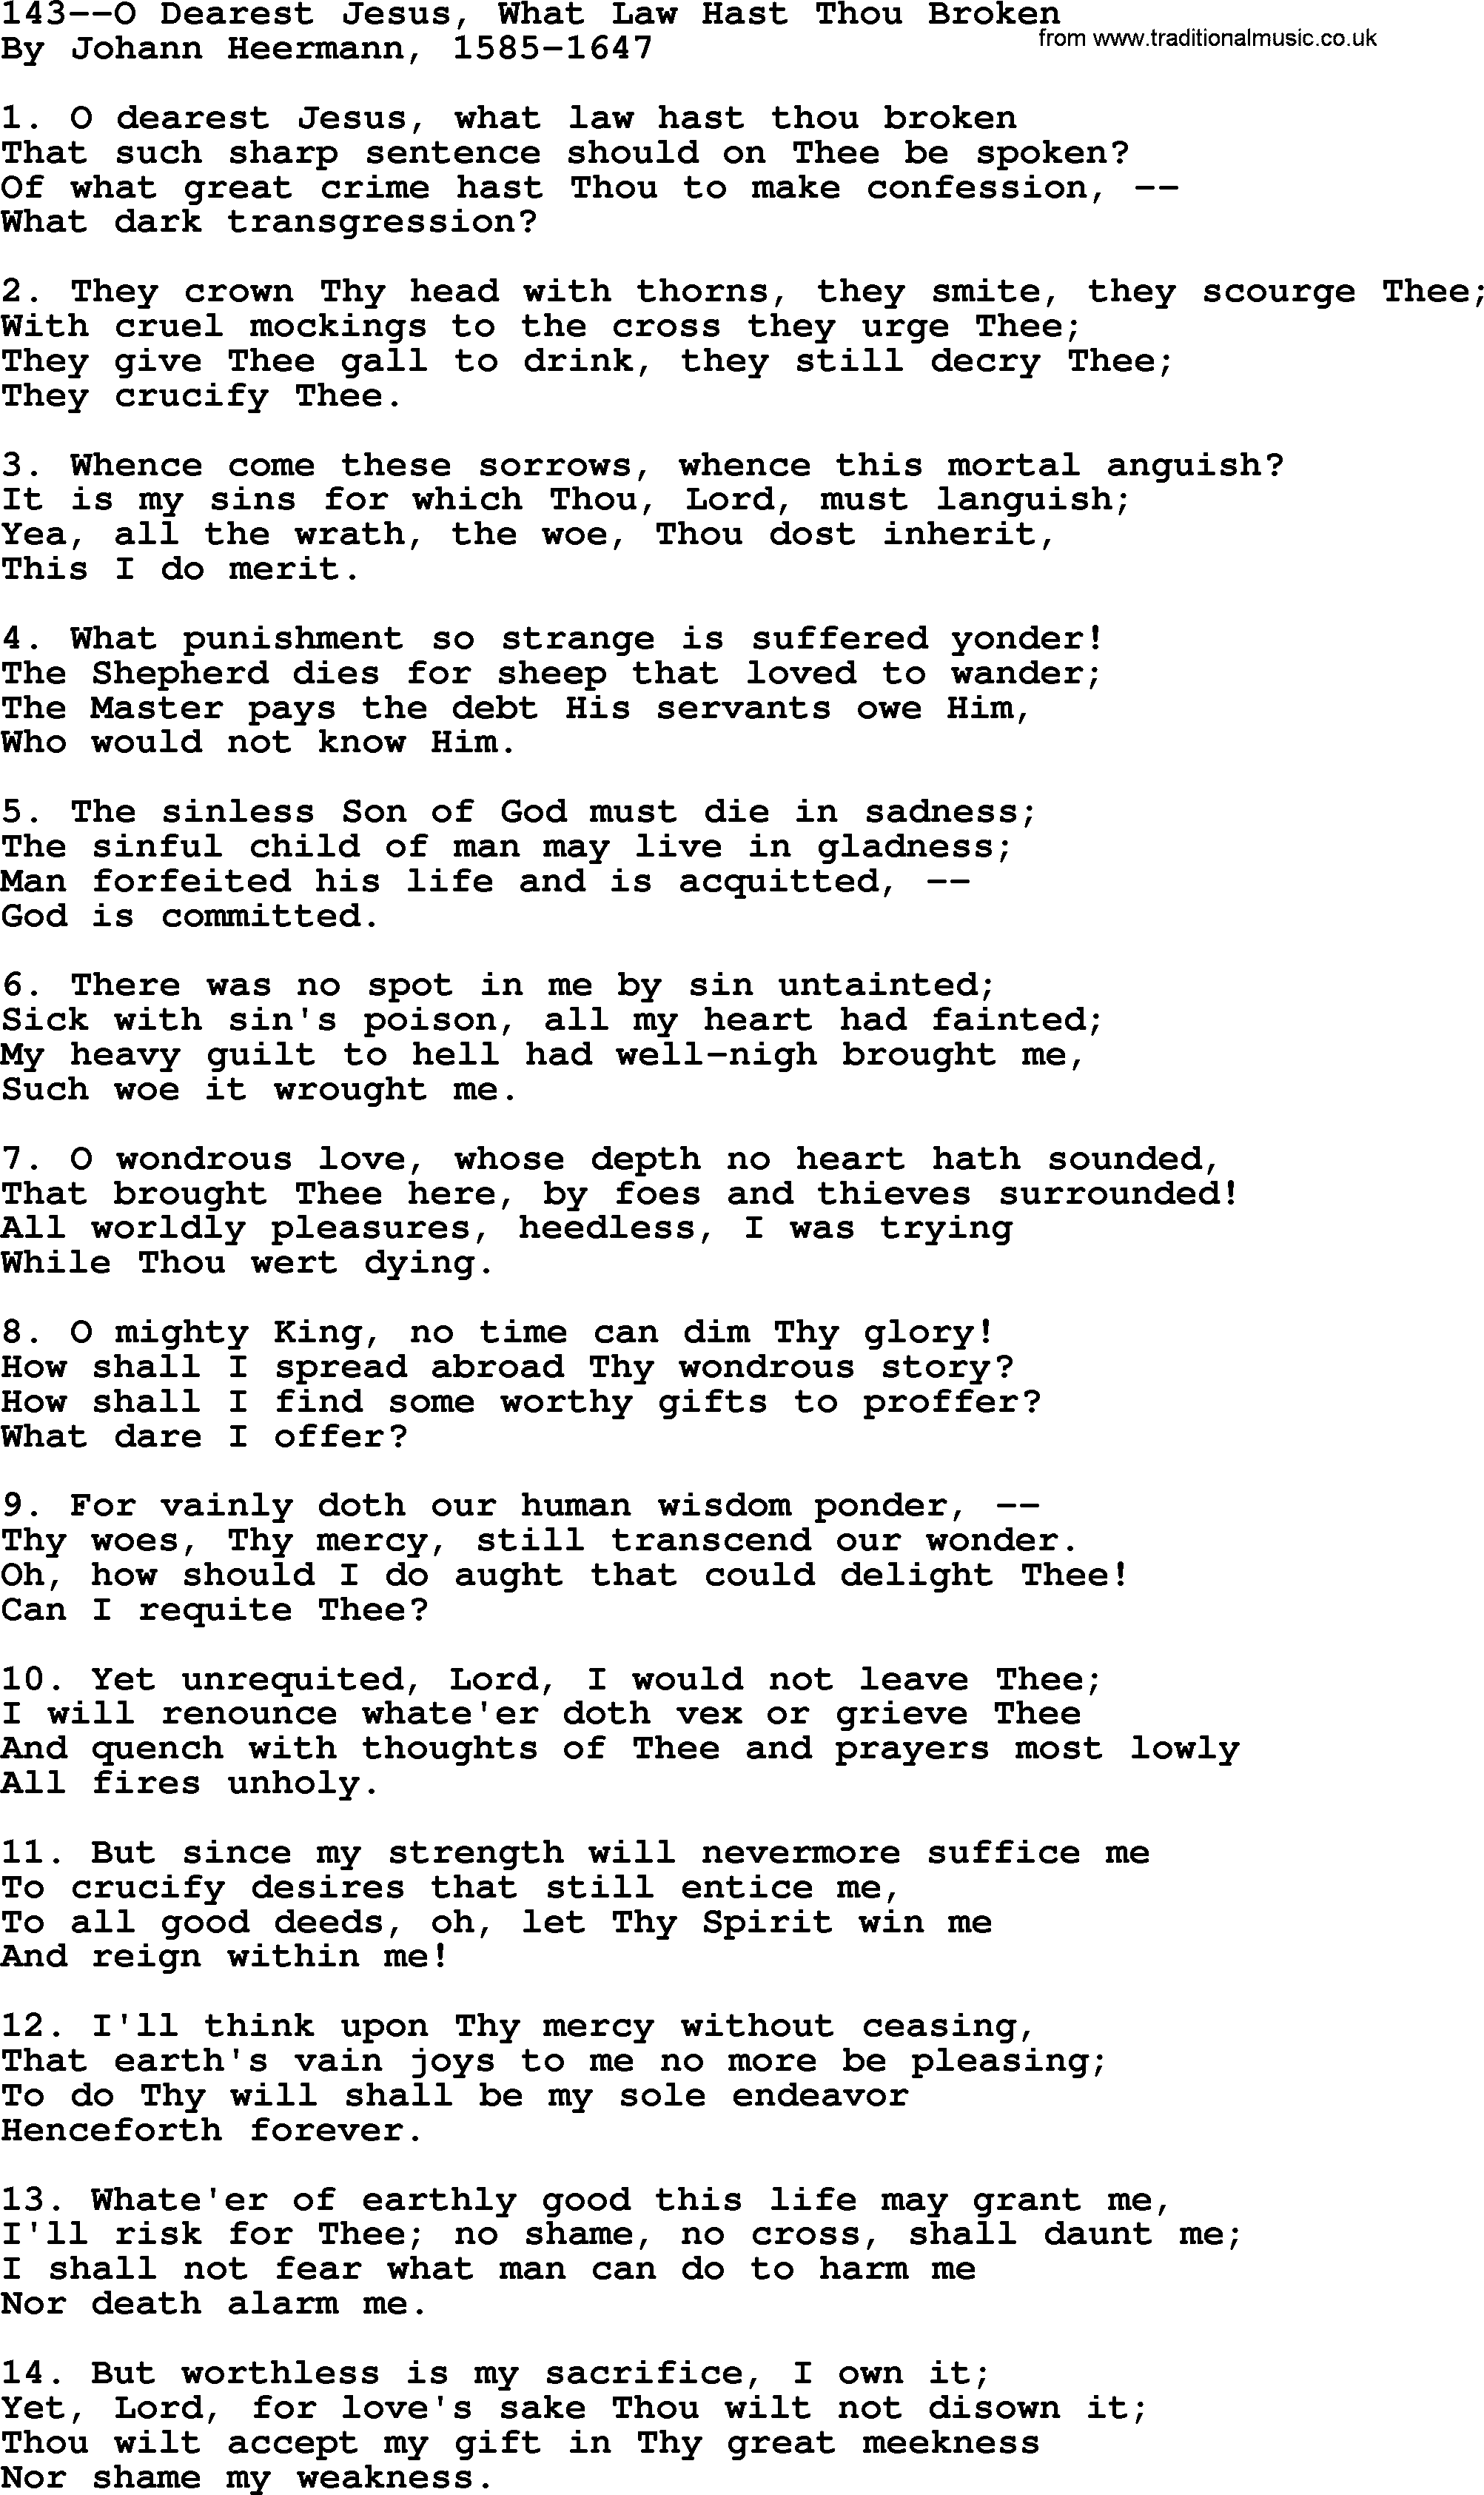 Lutheran Hymn: 143--O Dearest Jesus, What Law Hast Thou Broken.txt lyrics with PDF